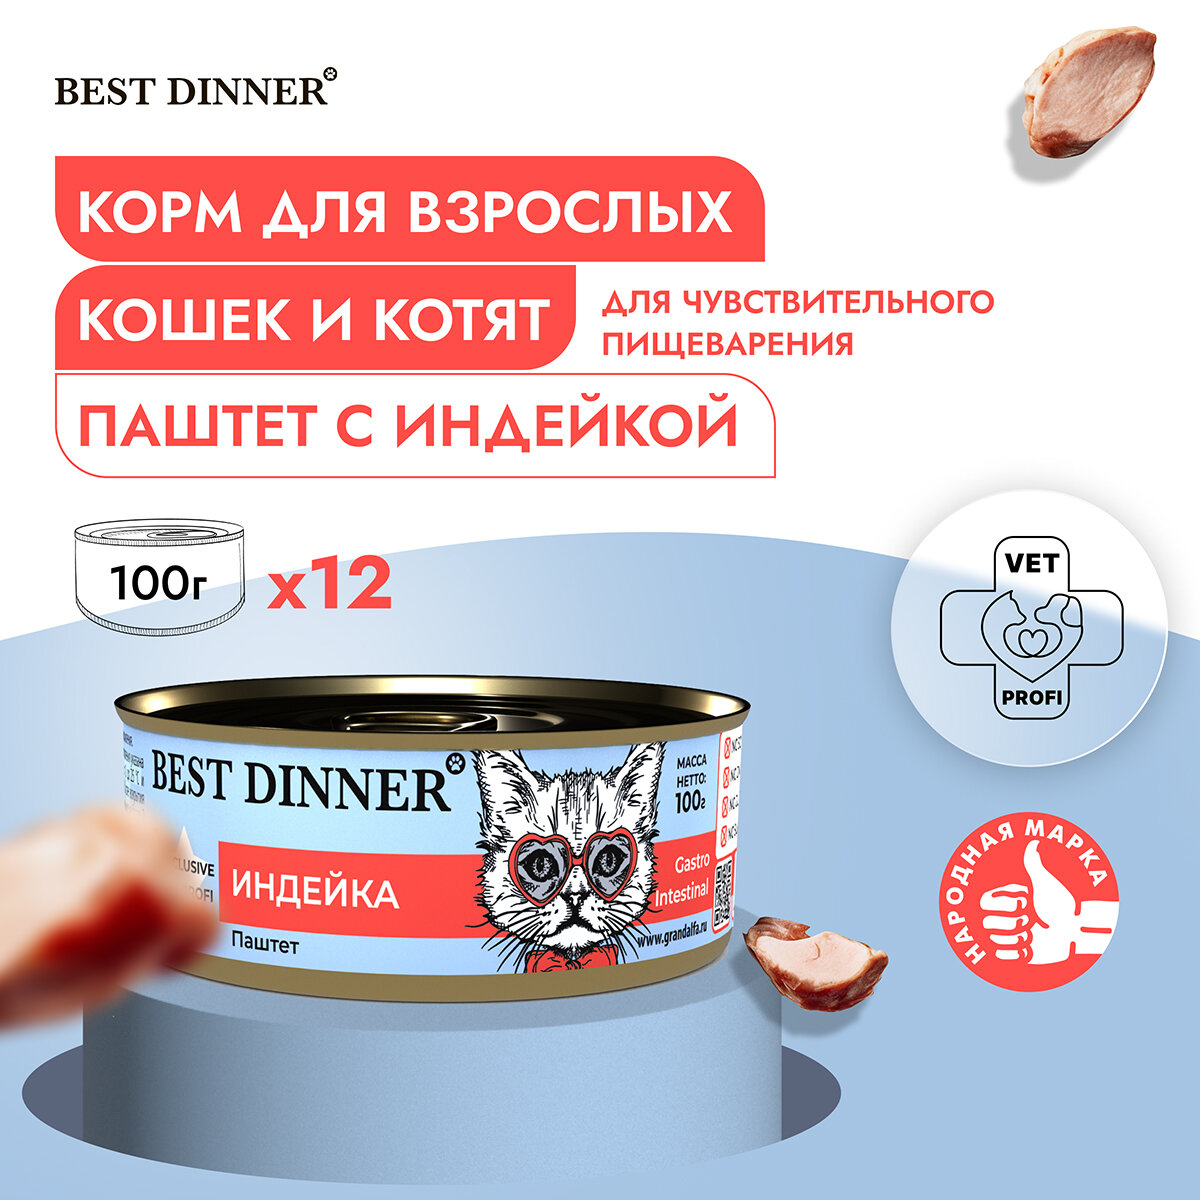 Влажный консервированный корм для кошек Бест Диннер Best Dinner для кошек Exclusive индейка 100гр. по 12шт.